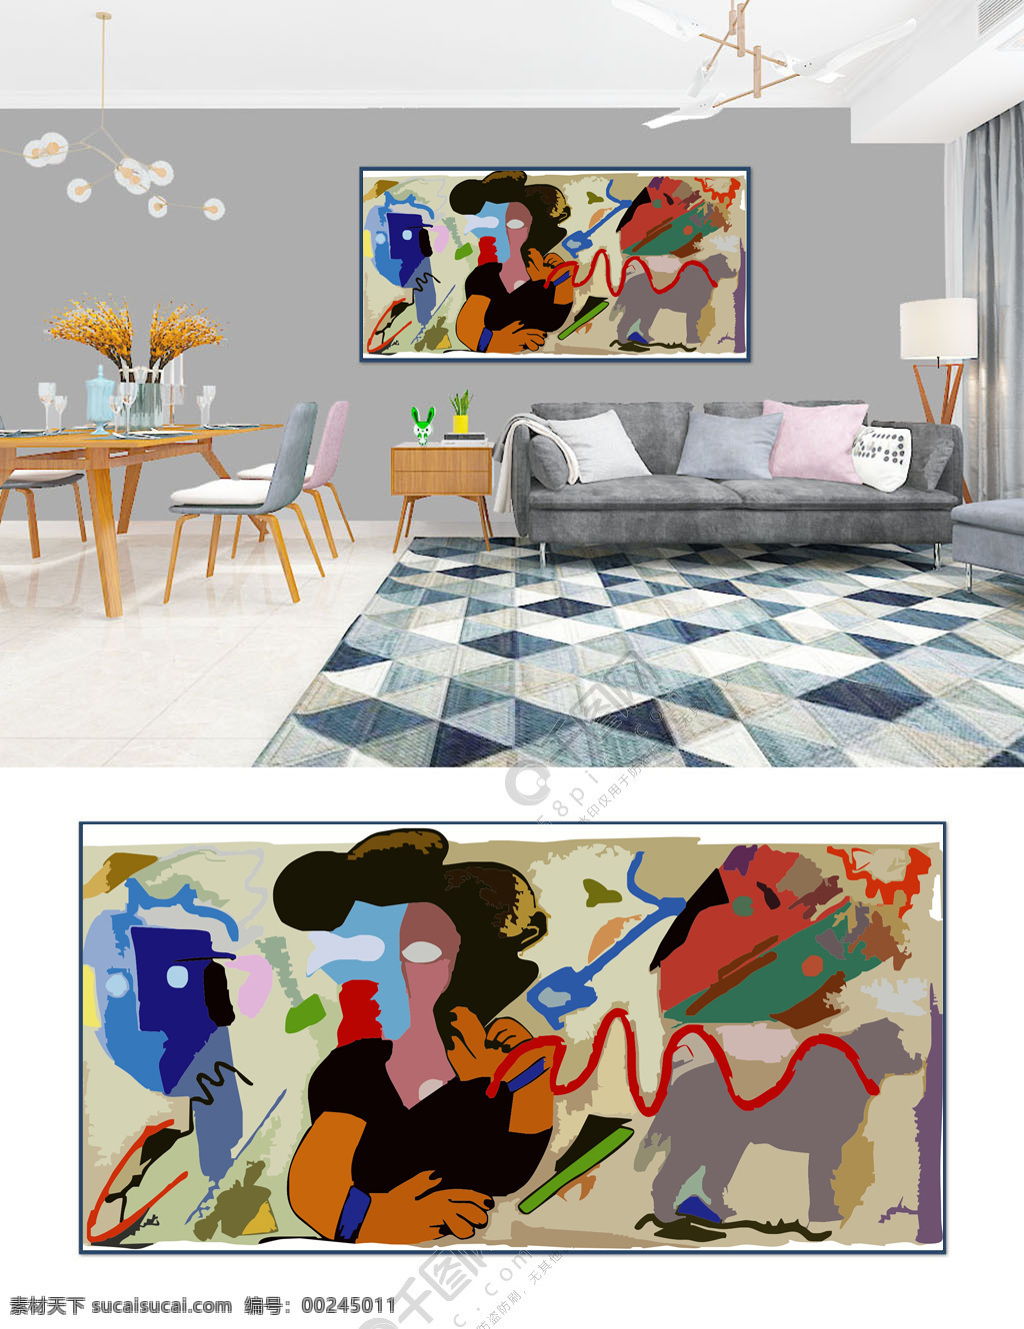 室内 抽象 彩色 装饰画 室内抽象画 抽象画 彩色抽象画 抽象装饰画